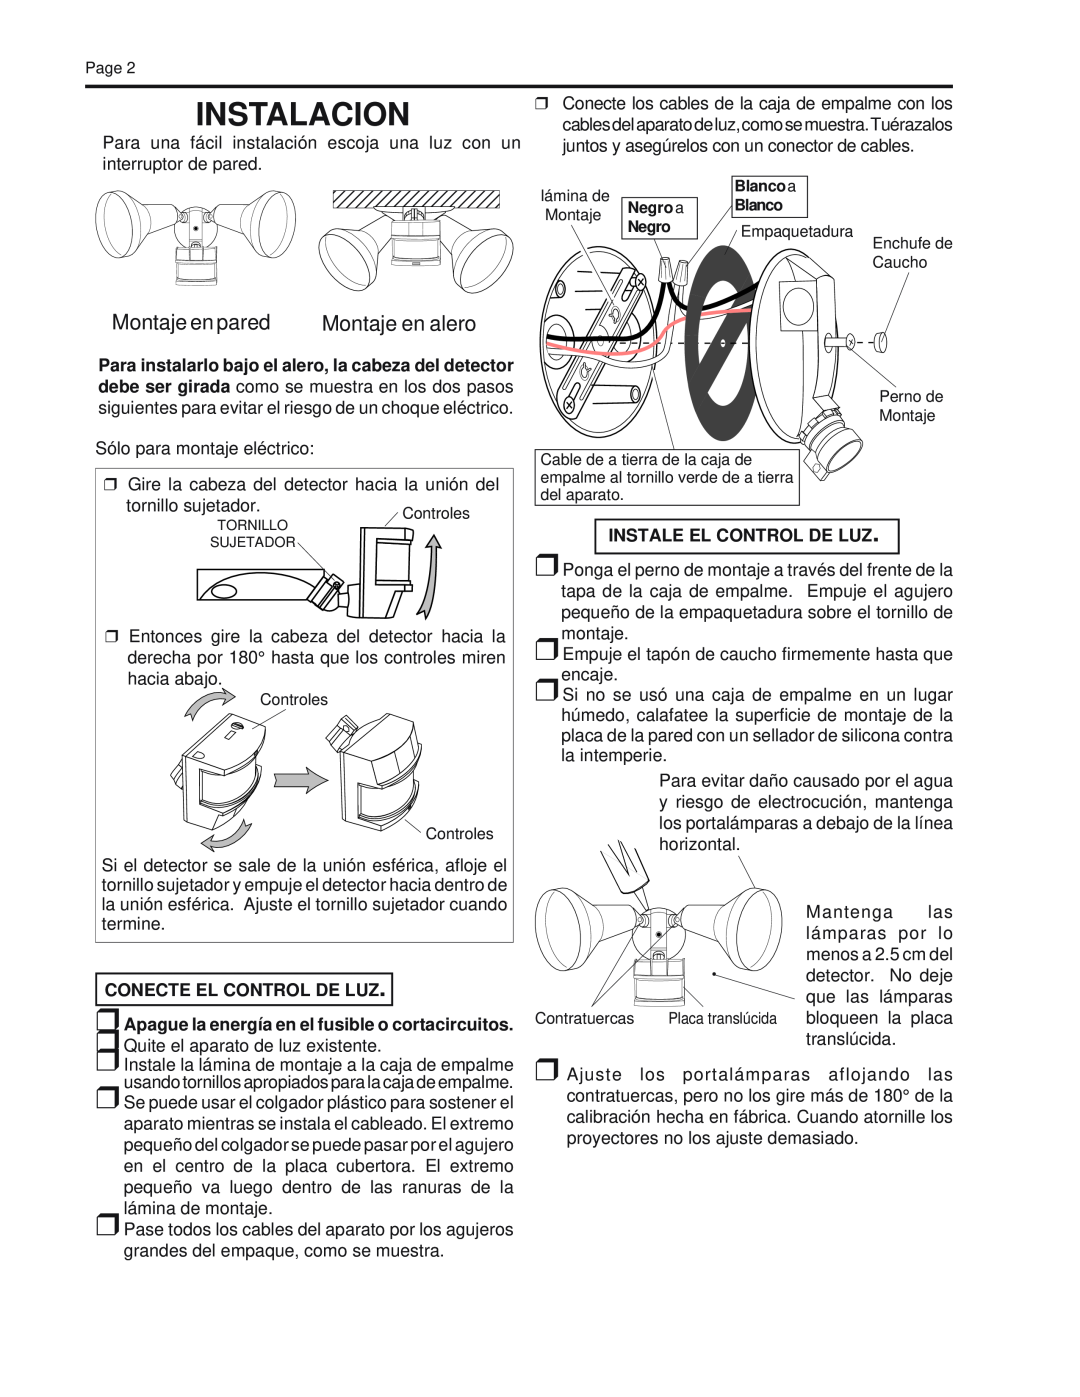 Heath Zenith CB-2010 manual Instalacion, Conecte El Control De Luz, Apague la energía en el fusible o cortacircuitos 